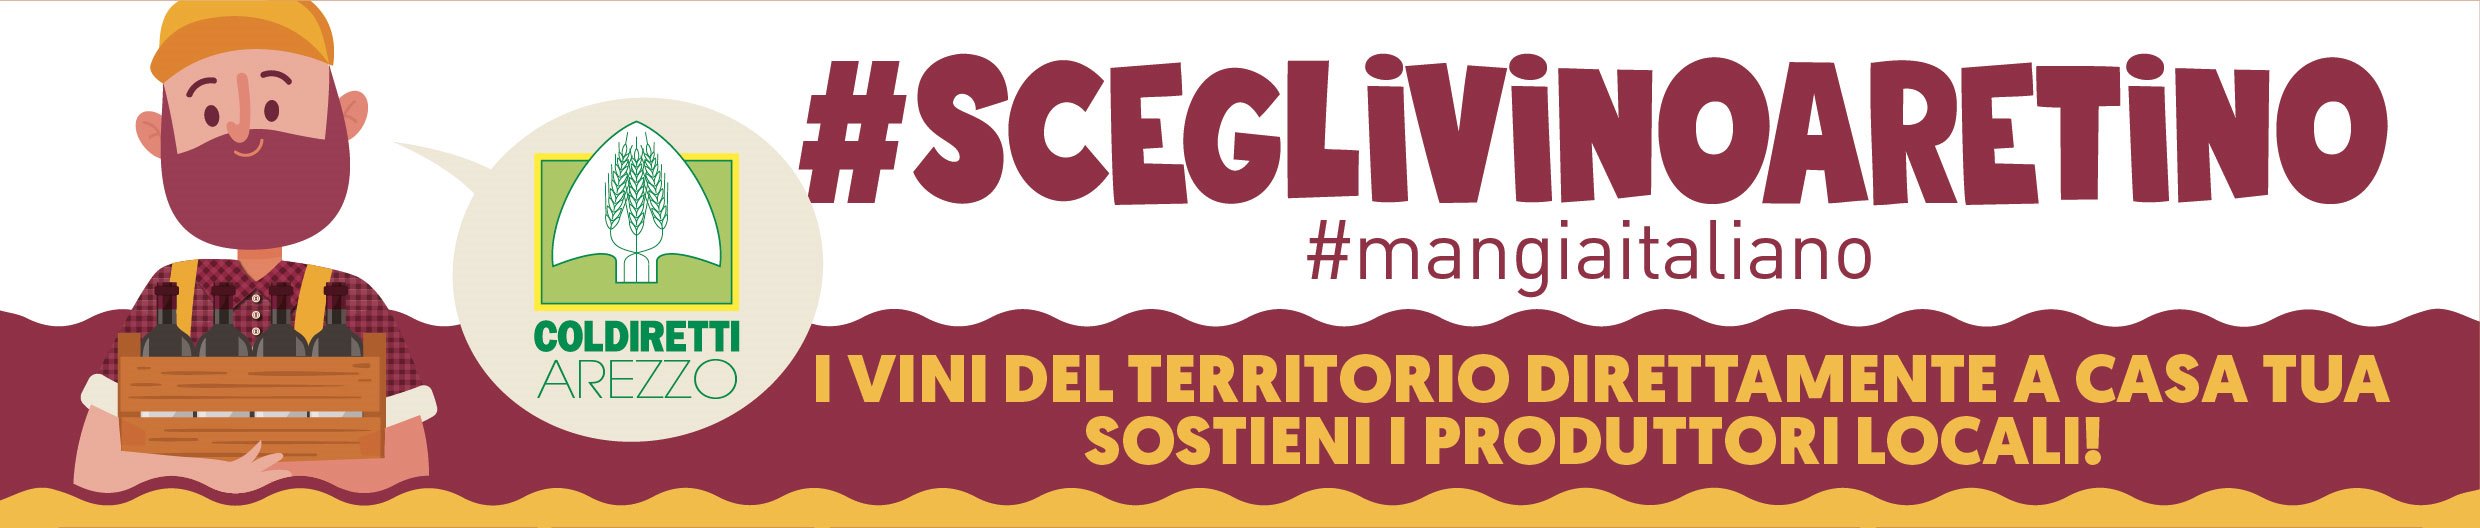 Coldiretti: #sceglivinoaretino, parte la campagna a domicilio delle aziende vitivinicole